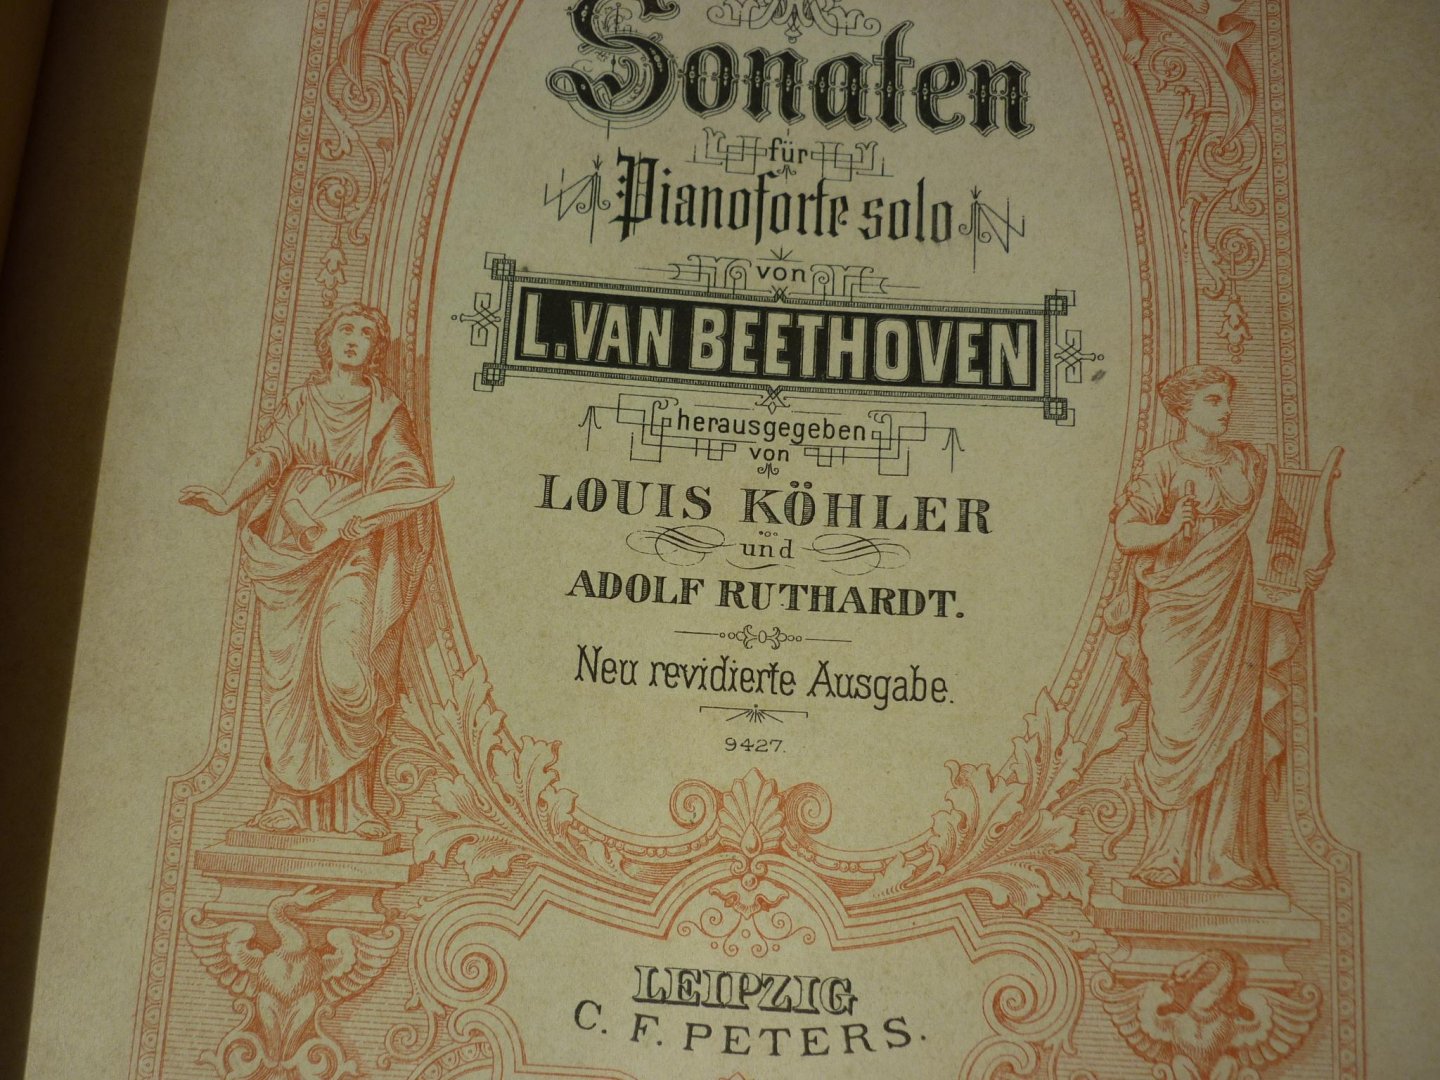 Beethoven; Ludwig von (1770 – 1827) - Sonaten fur Klavier zu 2 handen - Band 2, (herausgegeben von Louis Kohler und Adolf Ruthardt)